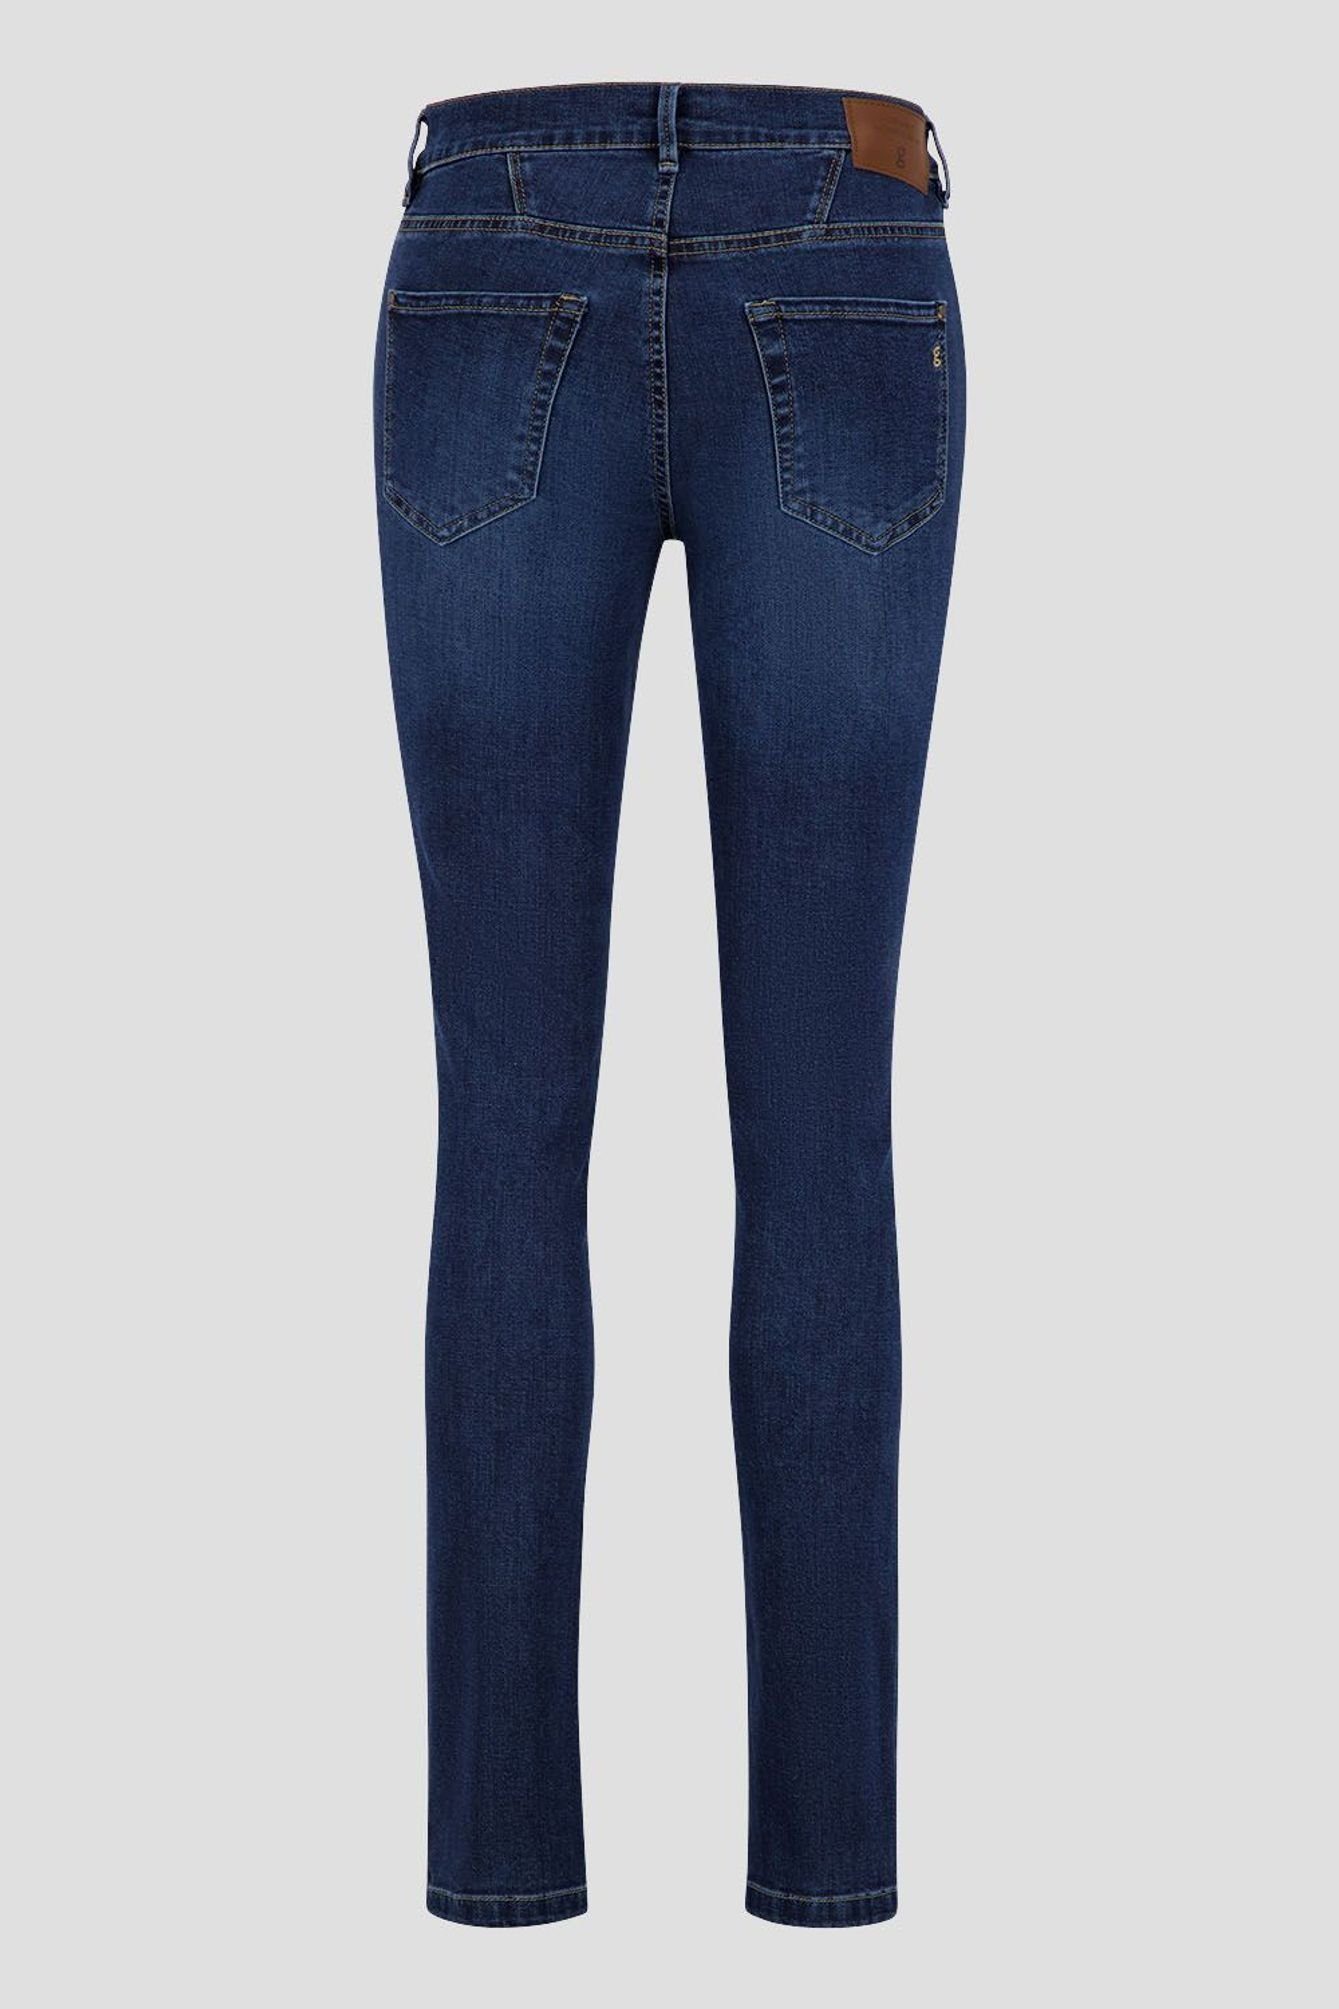 670721 GARDEUR Atelier 5-Pocket-Jeans (7169) blau